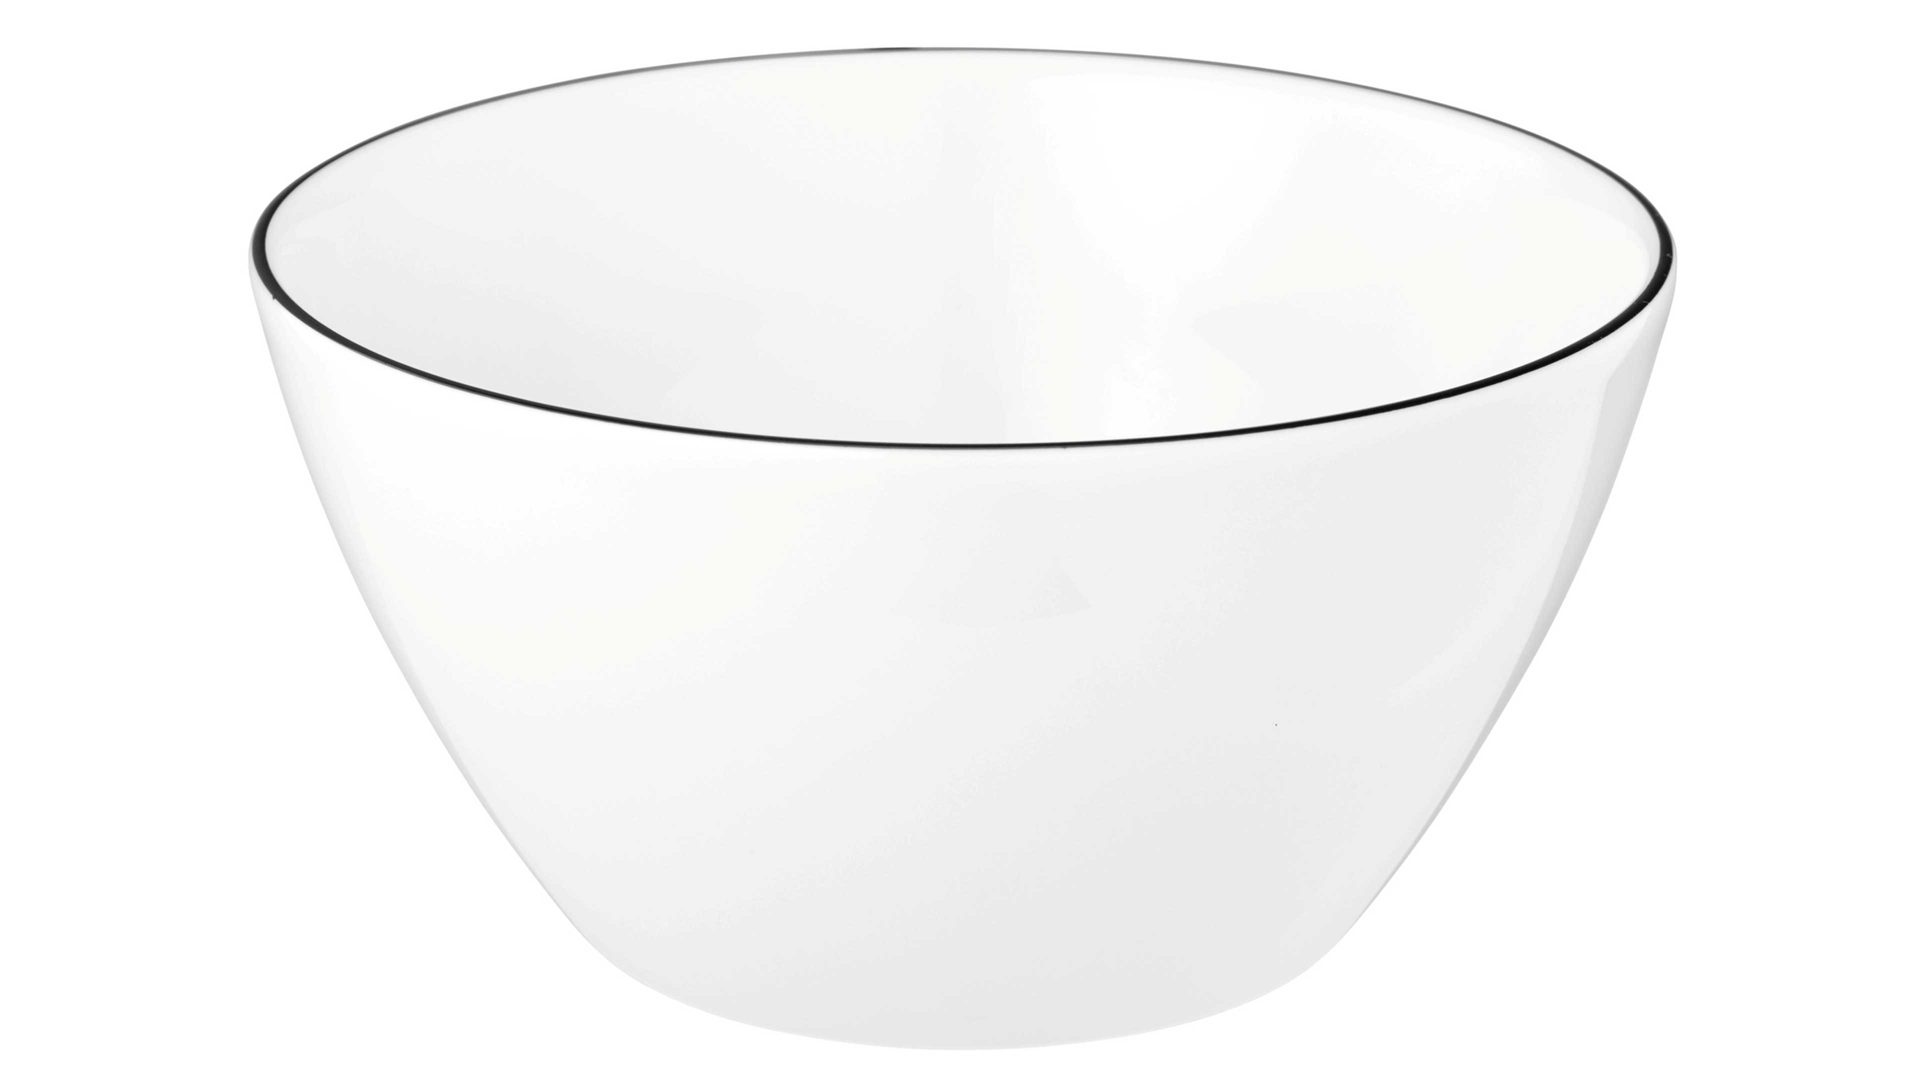 Müslischale Seltmann aus Porzellan in Weiß Seltmann Lido – Müslischale weißes Porzellan – Durchmesser ca. 15 cm